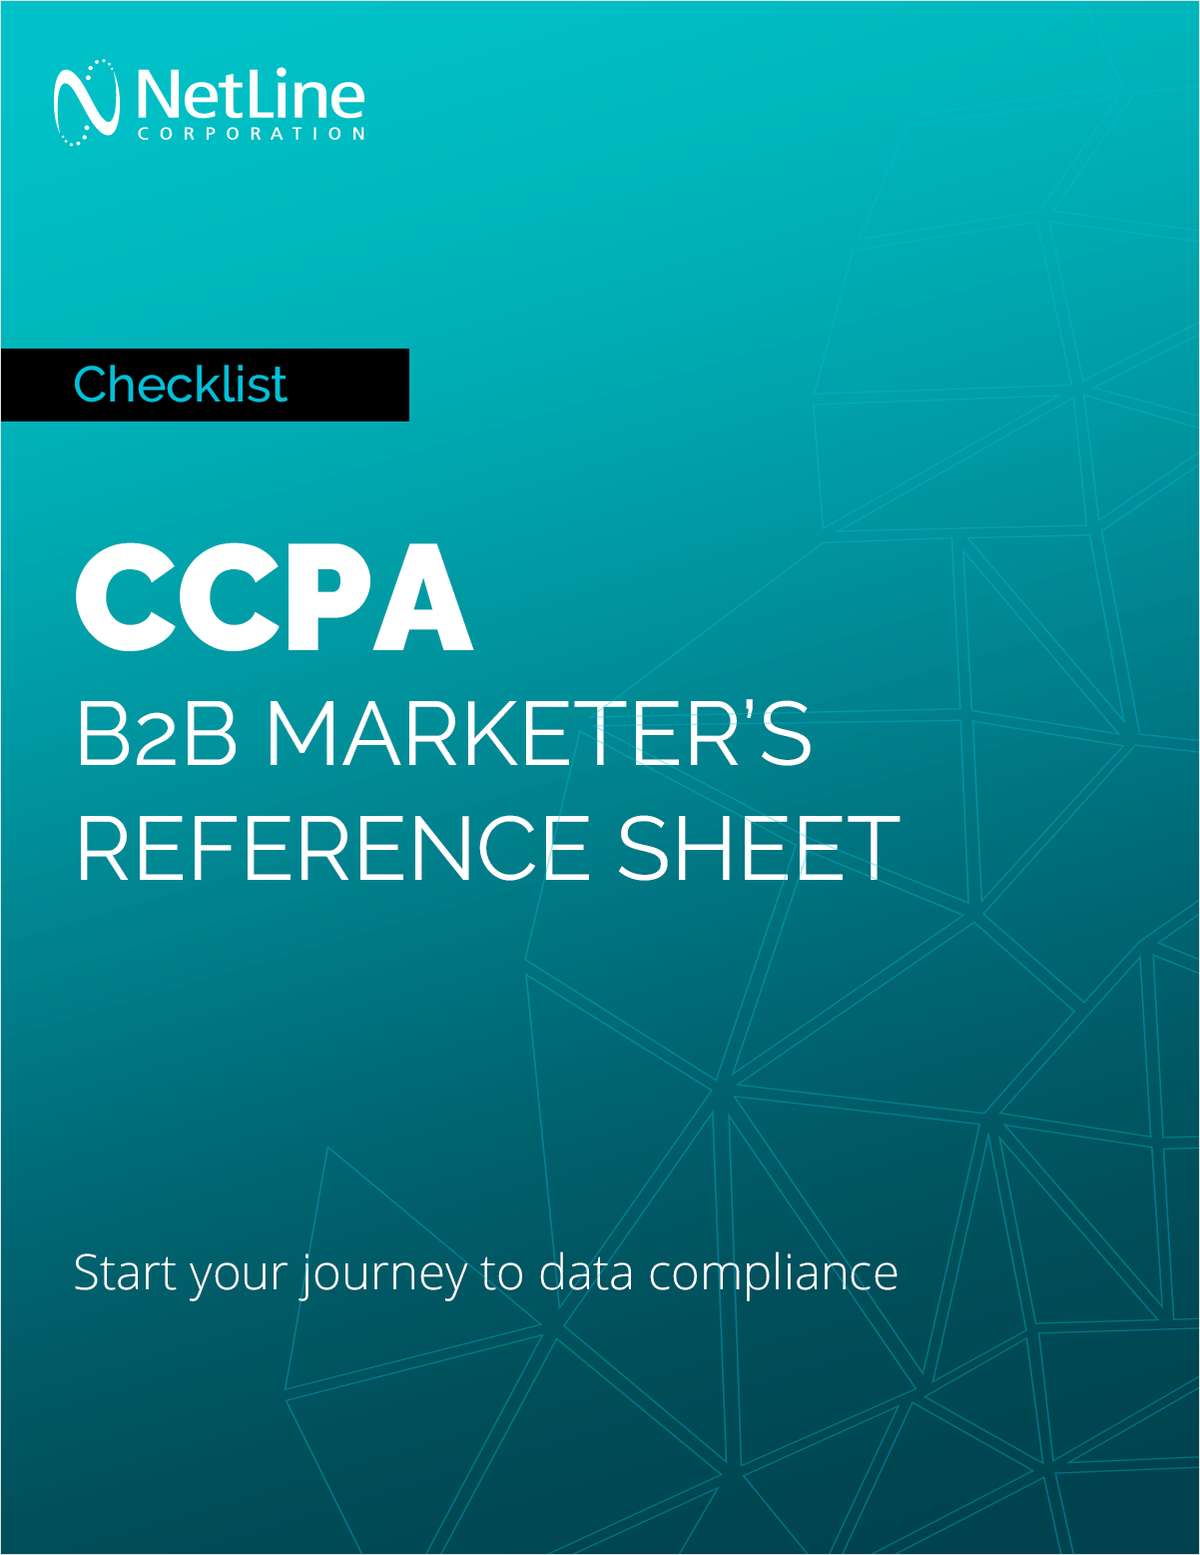 CCPA: B2B Marketer's Reference Sheet